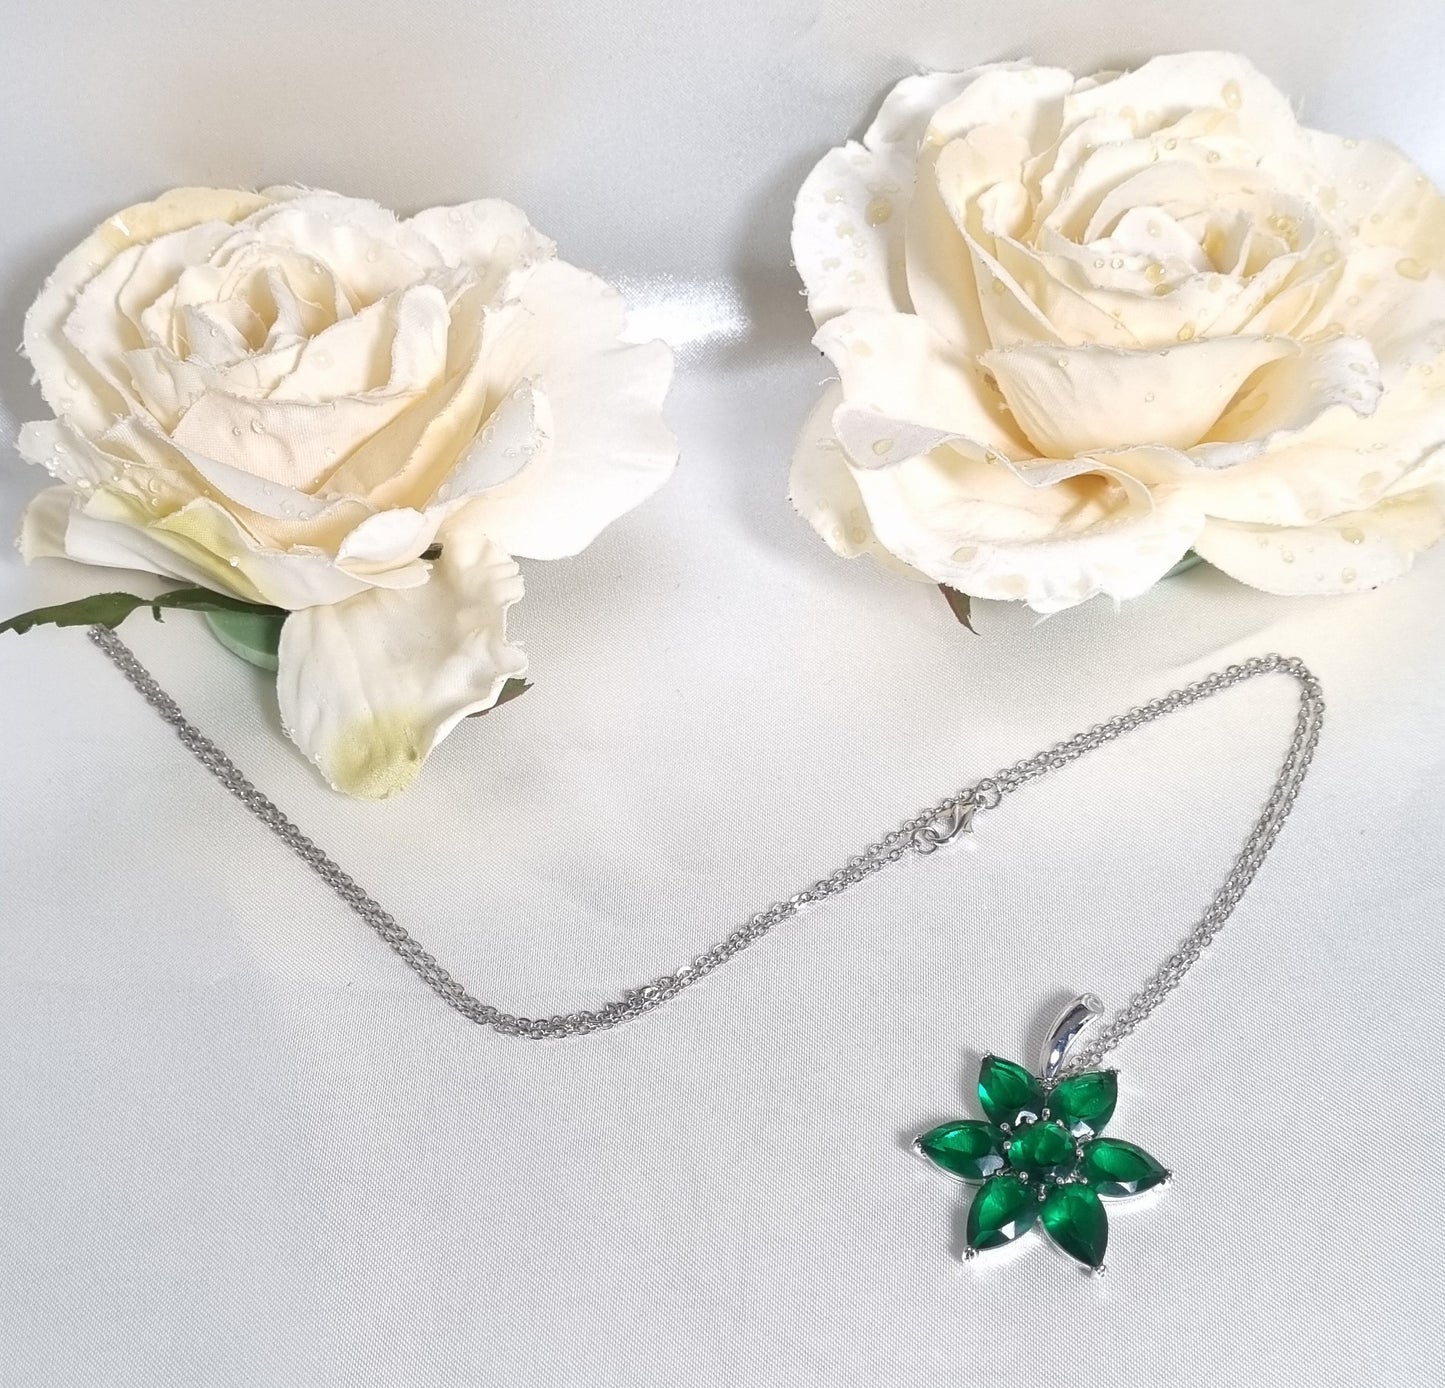 Collana AMORE .020 catenella lunga ciondolo fiore cristallo verde smeraldo e acciaio.